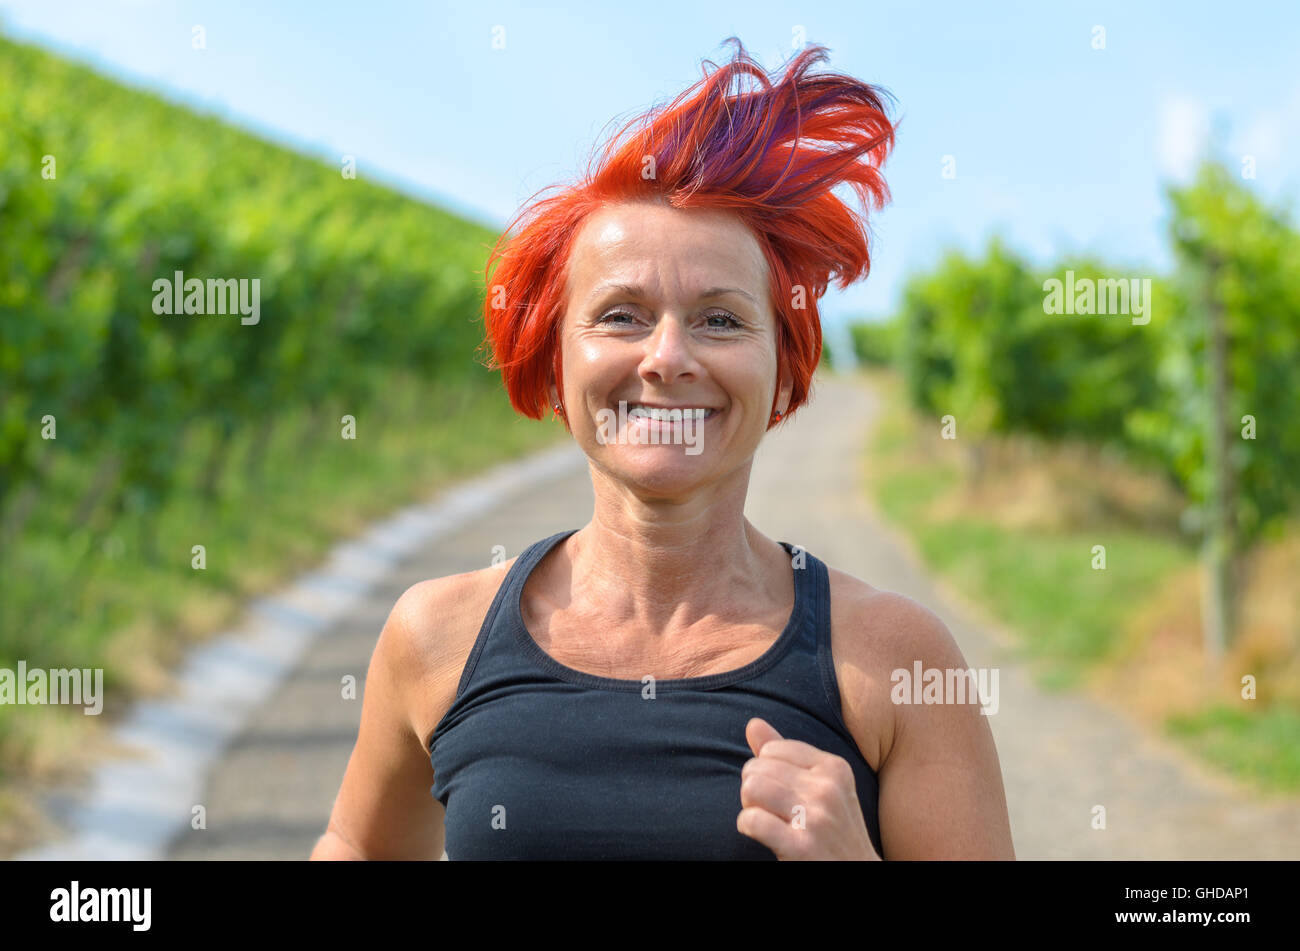 Lächelnde glücklich Frau Joggen in einem Weinberg, die entlang der Landstraße, Nahaufnahme von ihrem Gesicht und fliegenden roten Haare in ein gesundes Leben Stockfoto